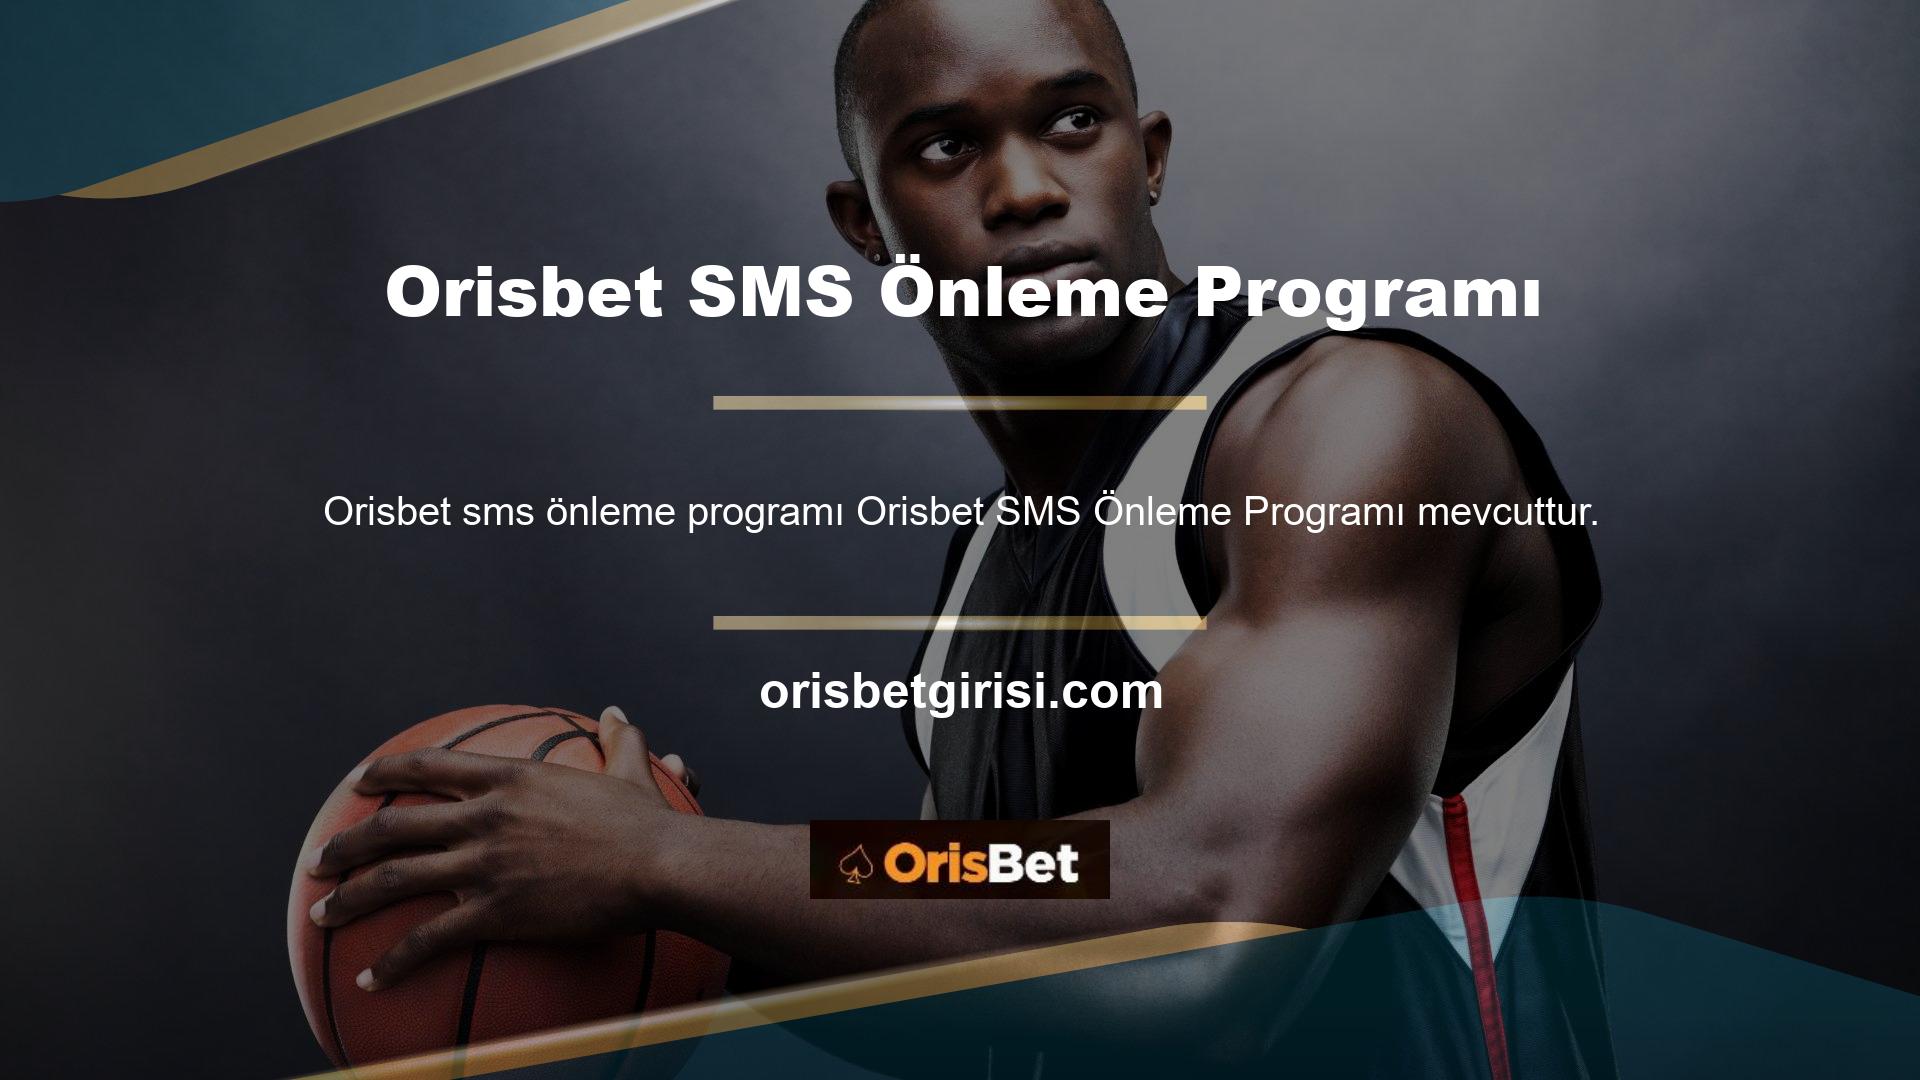 Öncelikle sizi Orisbet SMS önleme programı sistemi yani kısa mesaj sistemiyle tanıştırayım